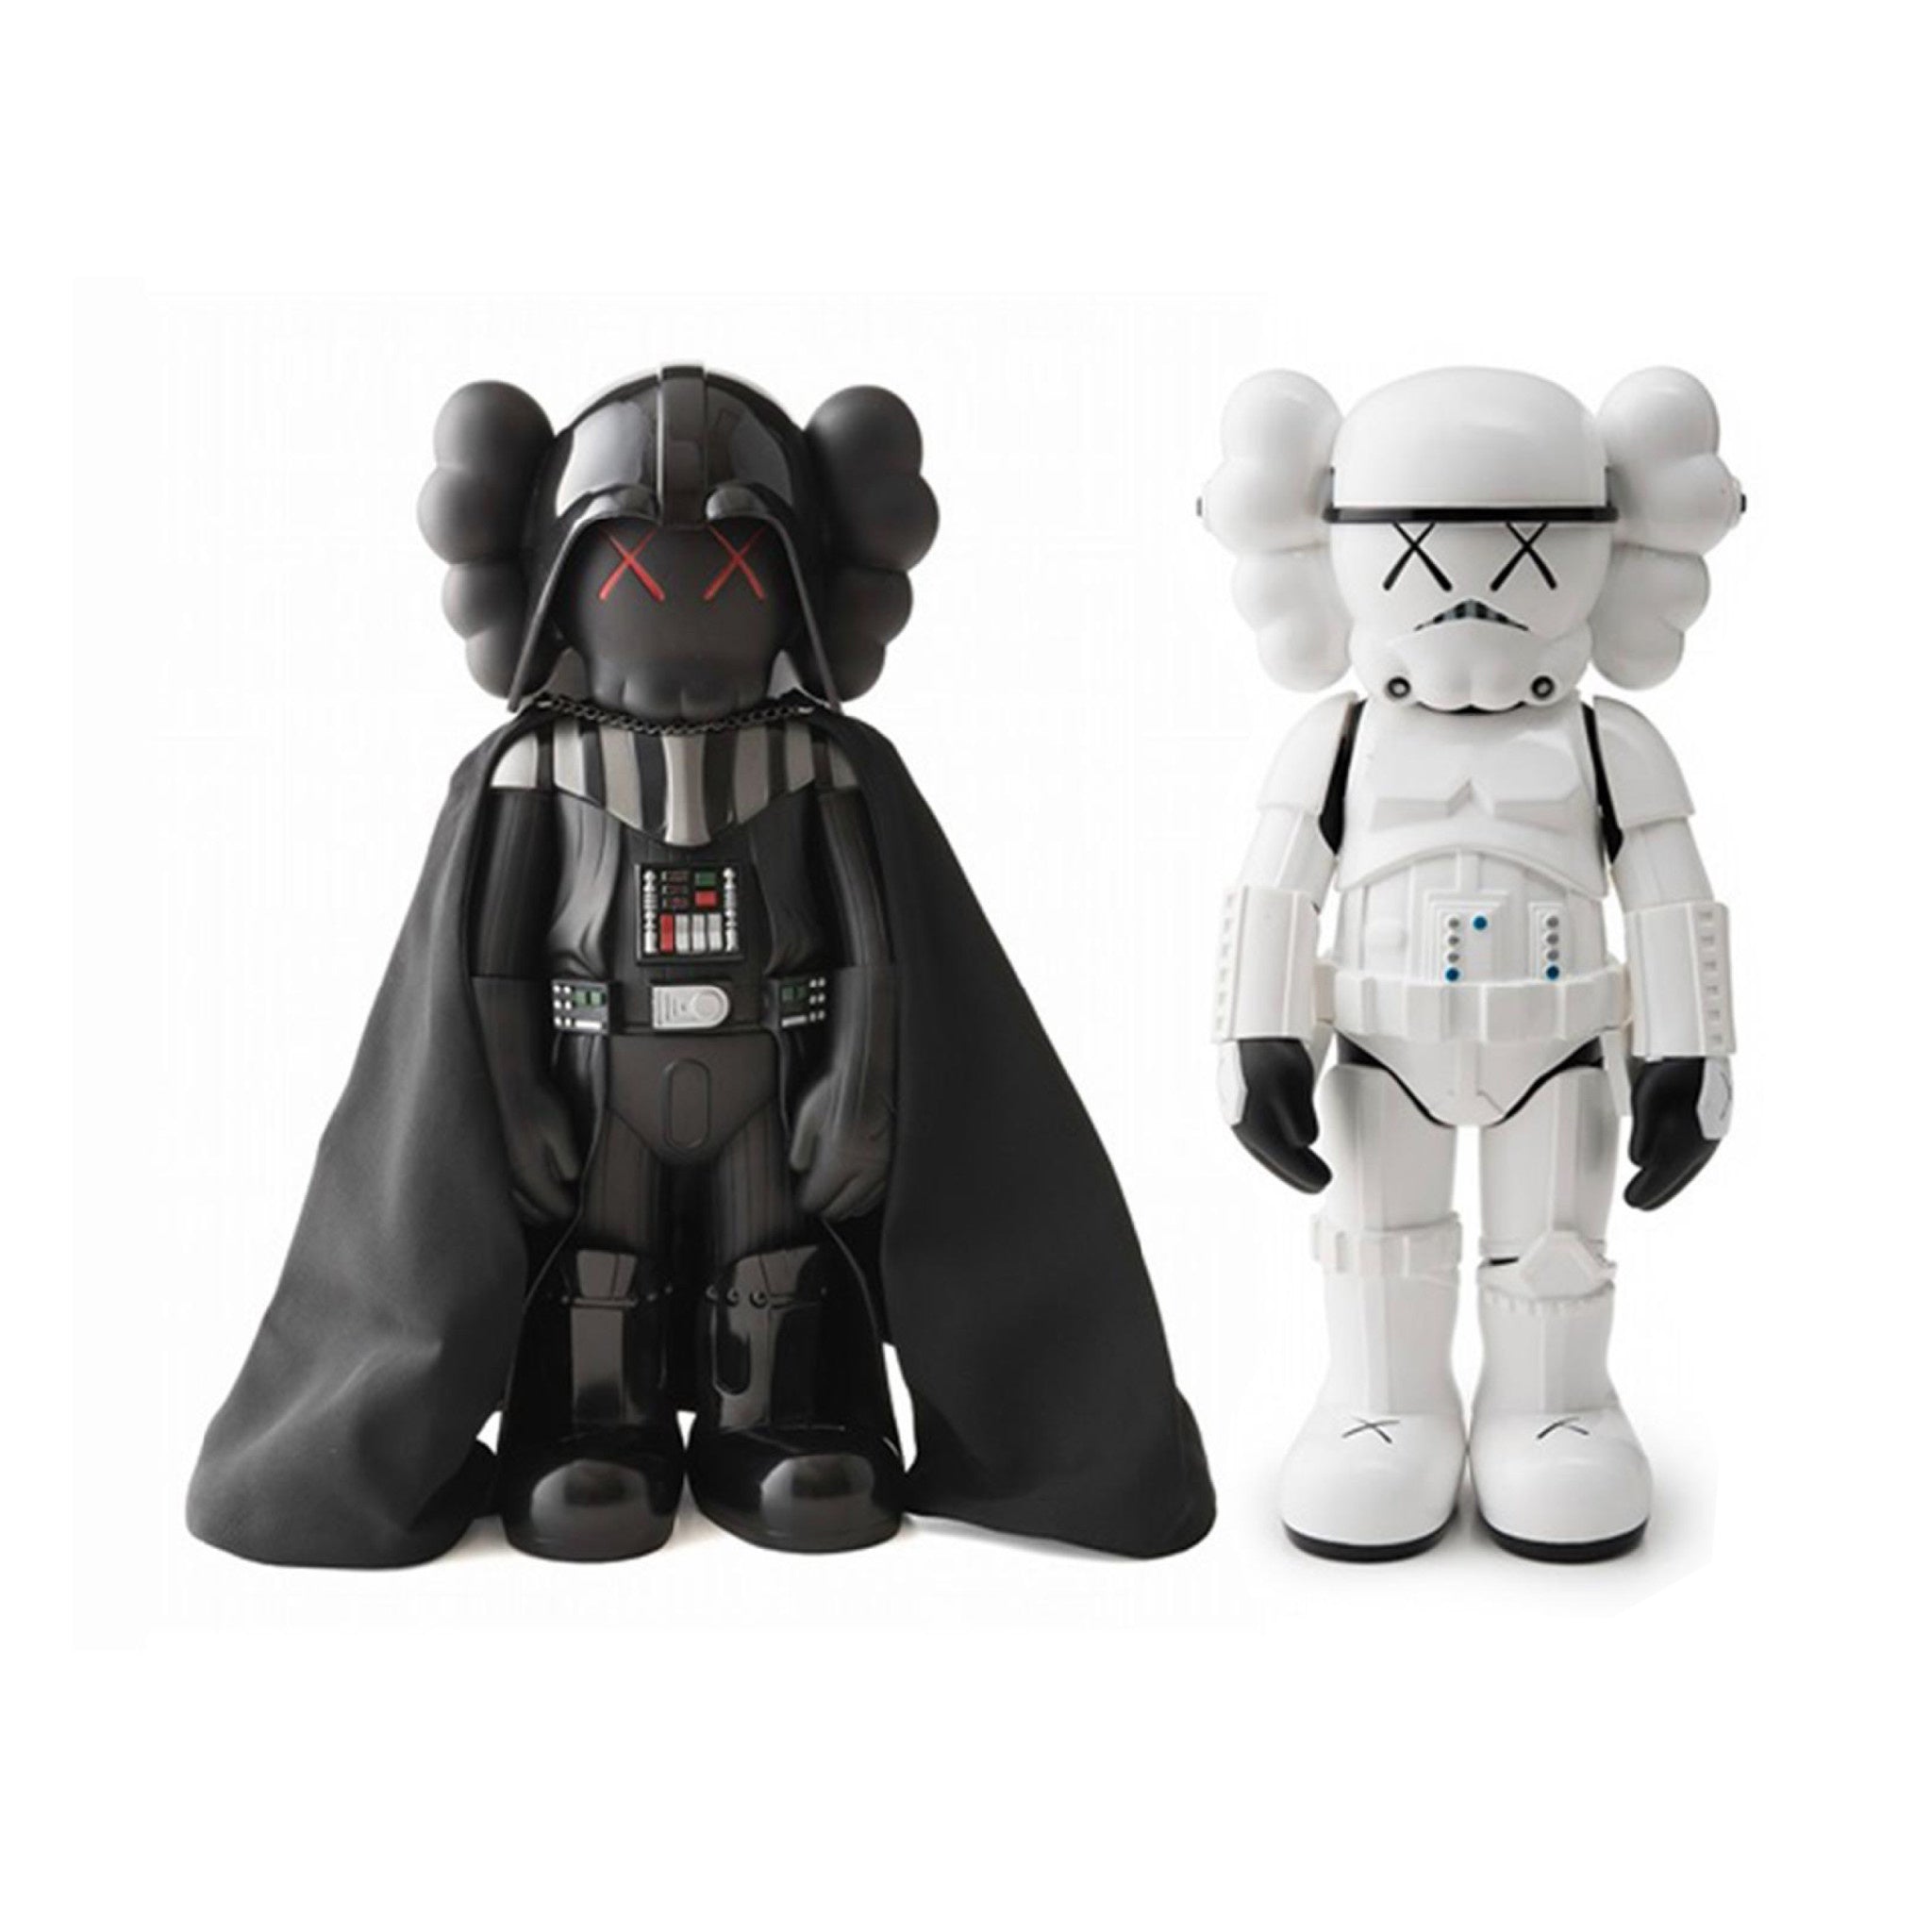 KAWS x Starwars - Darth Vader & Storm Trooper Mini Figure Set